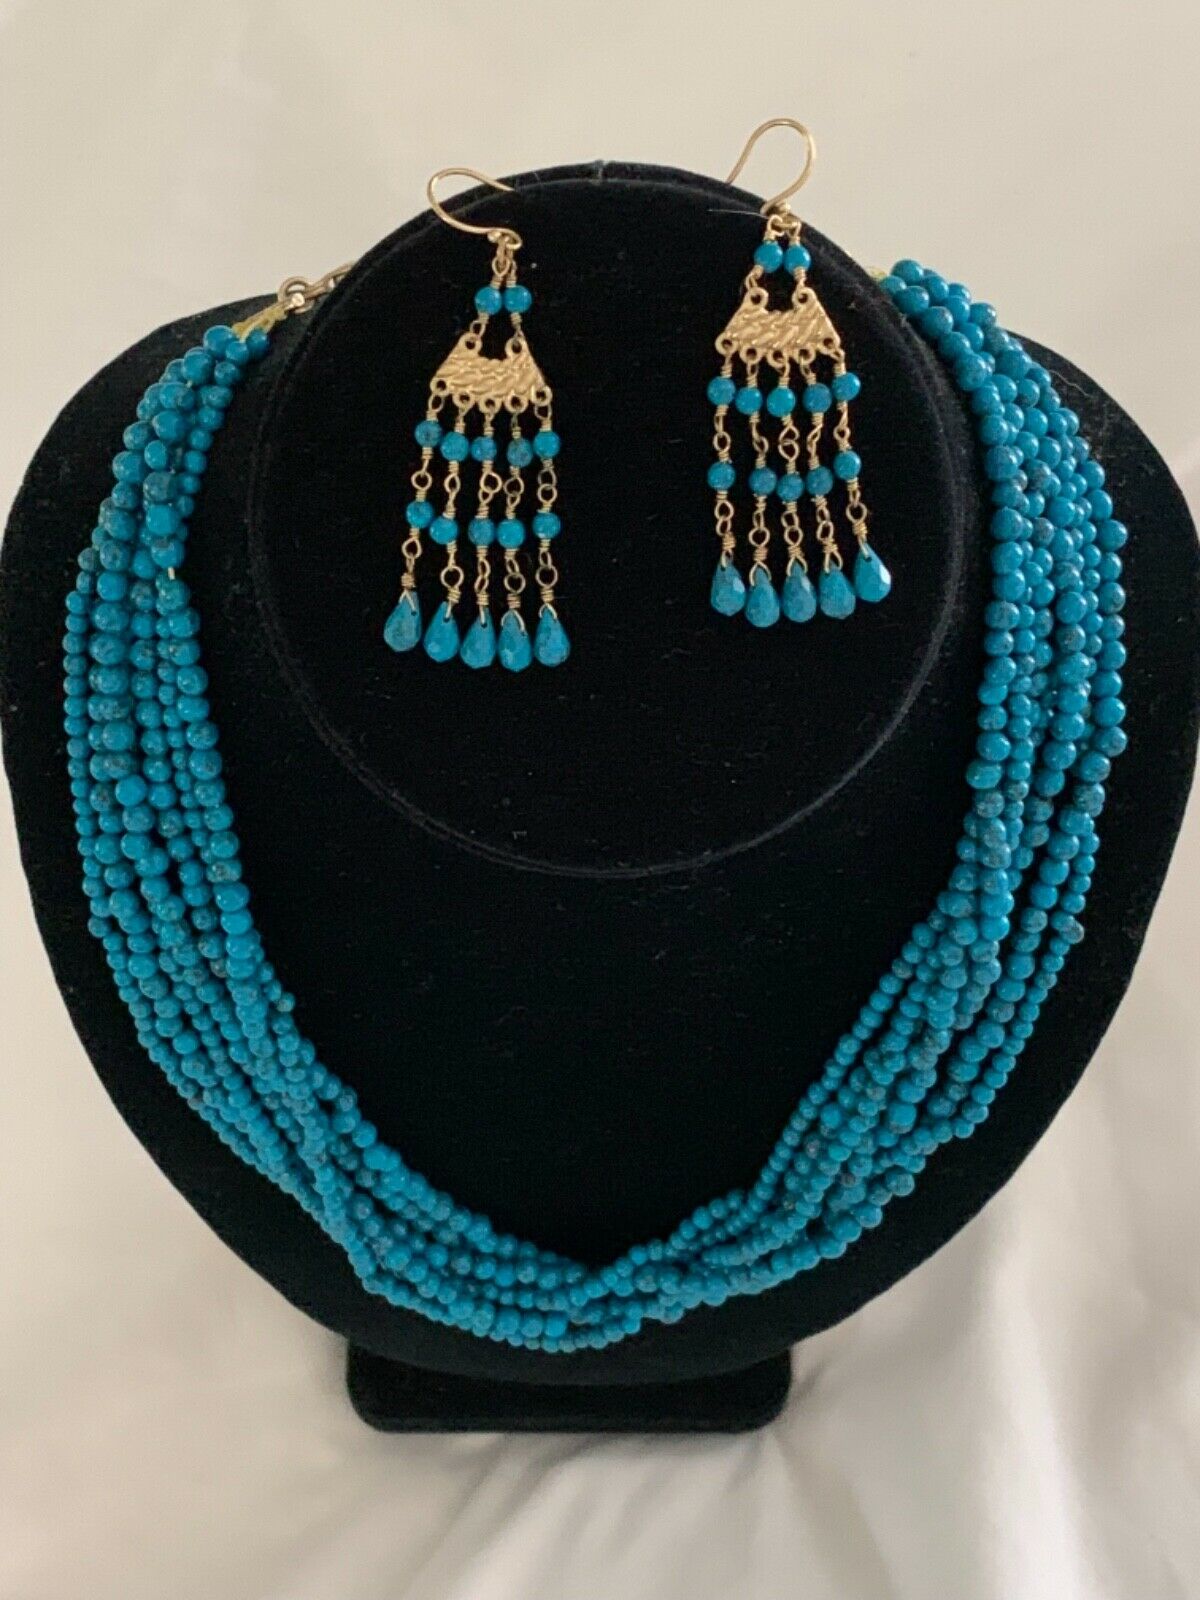 Earrings Necklace Blue Stone Beads From India W/ Ornate Brass Chandelier Earrin